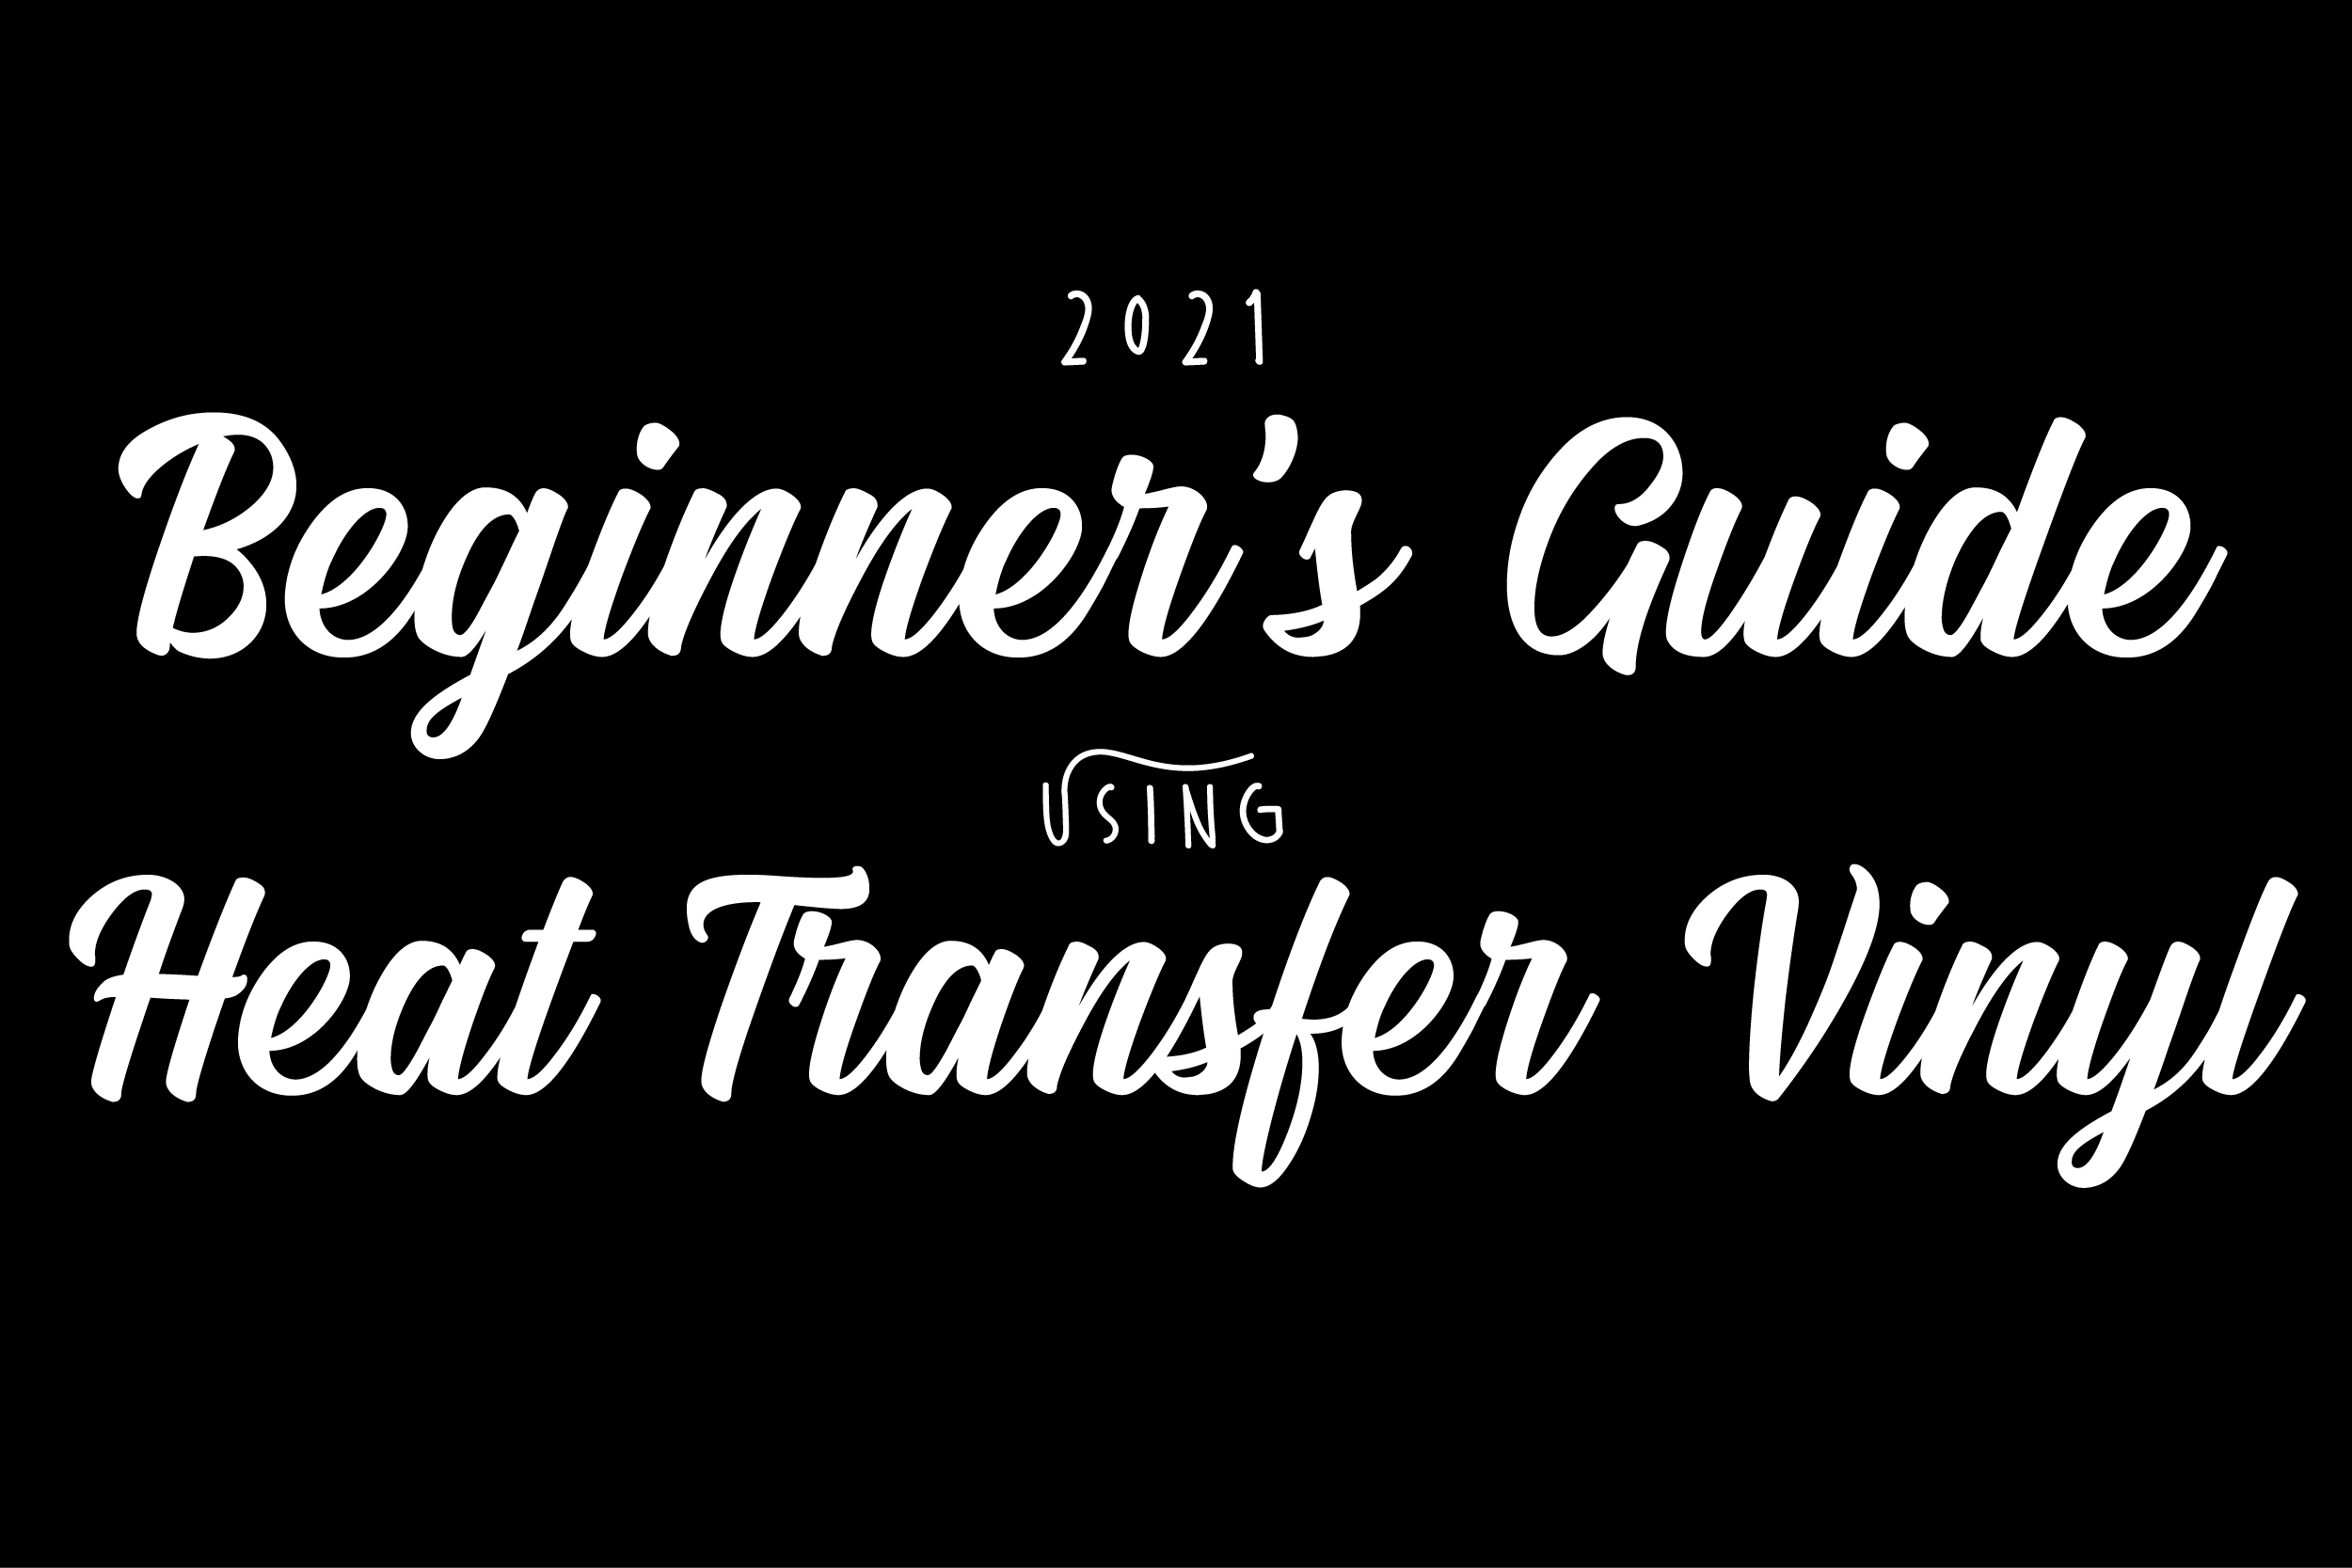 The Beginner's Guide to Heat Transfer Vinyl